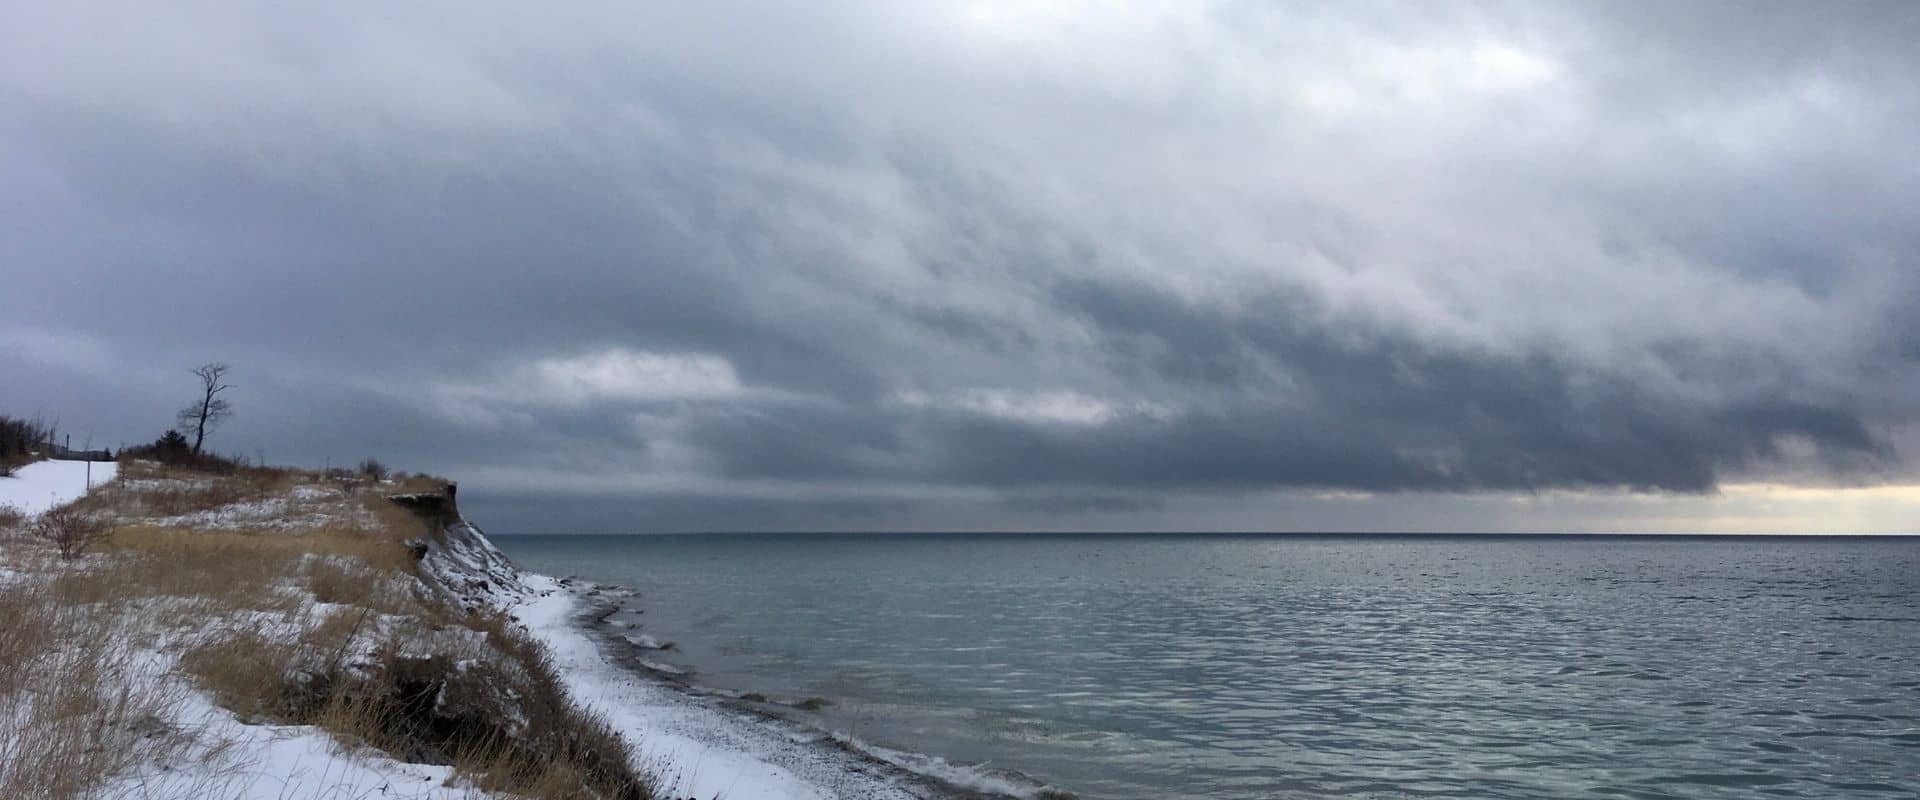 Nuages gris au-dessus de la rive du Lac Ontario en hiver.